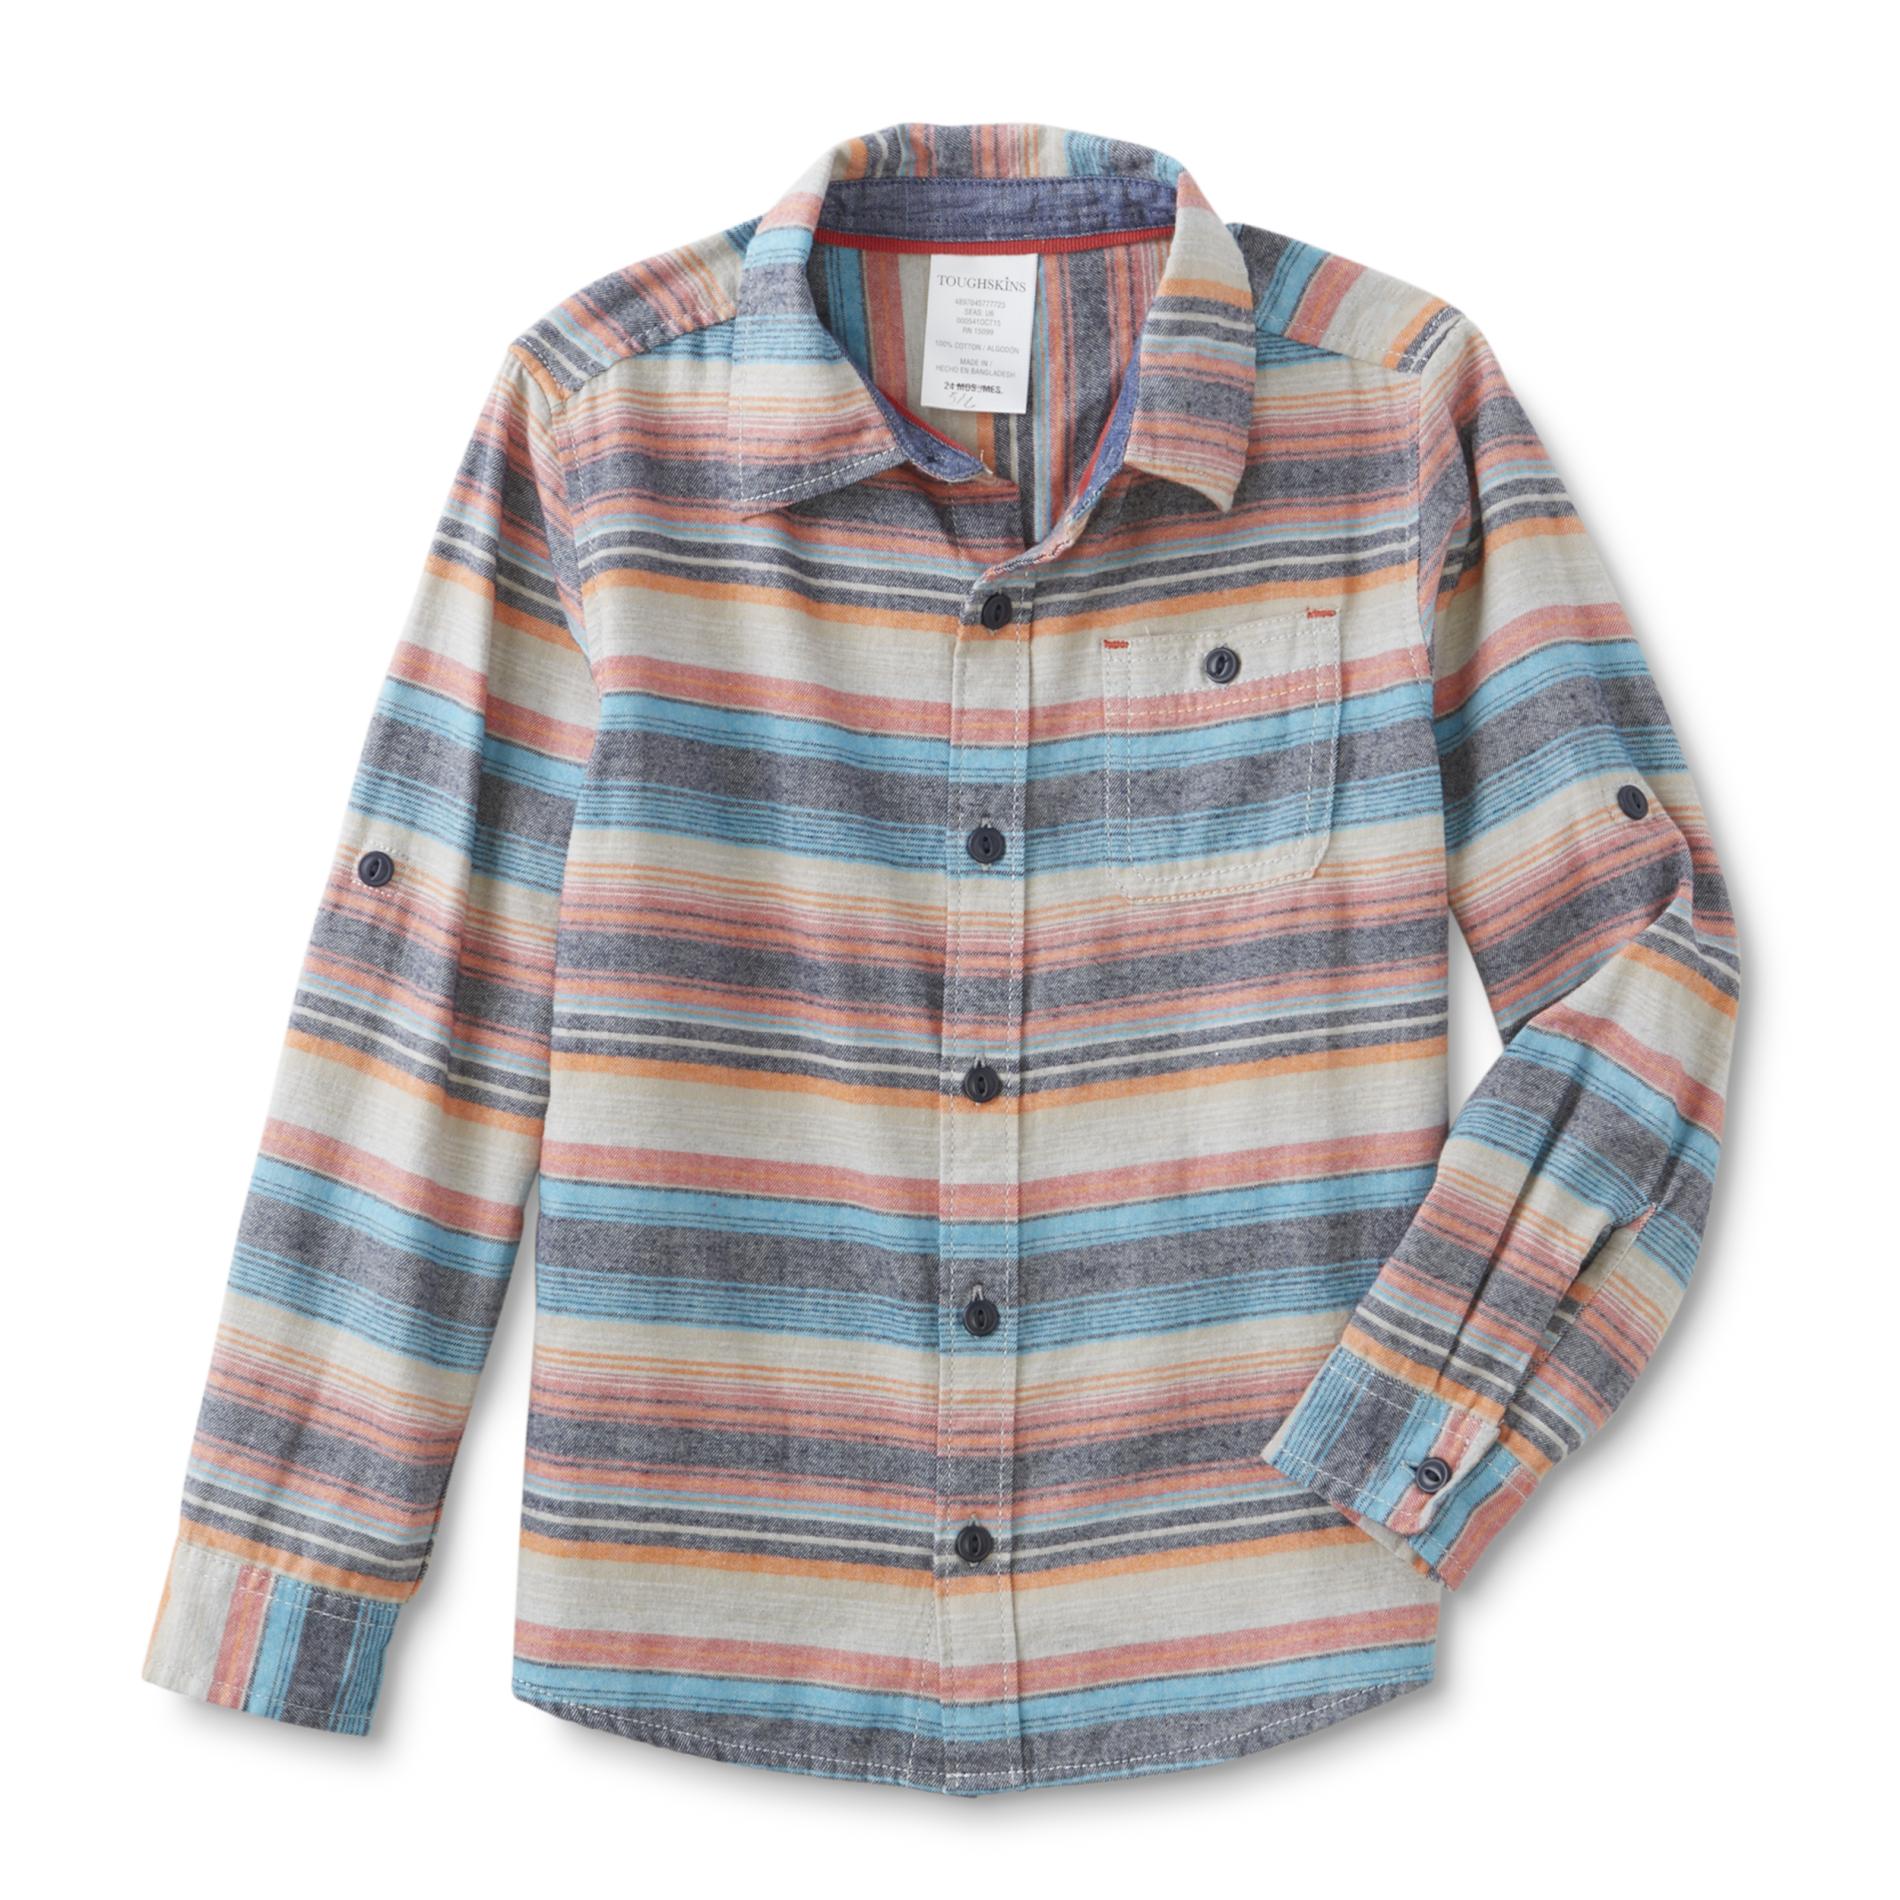 Toughskins Boy's Flannel Shirt - Striped